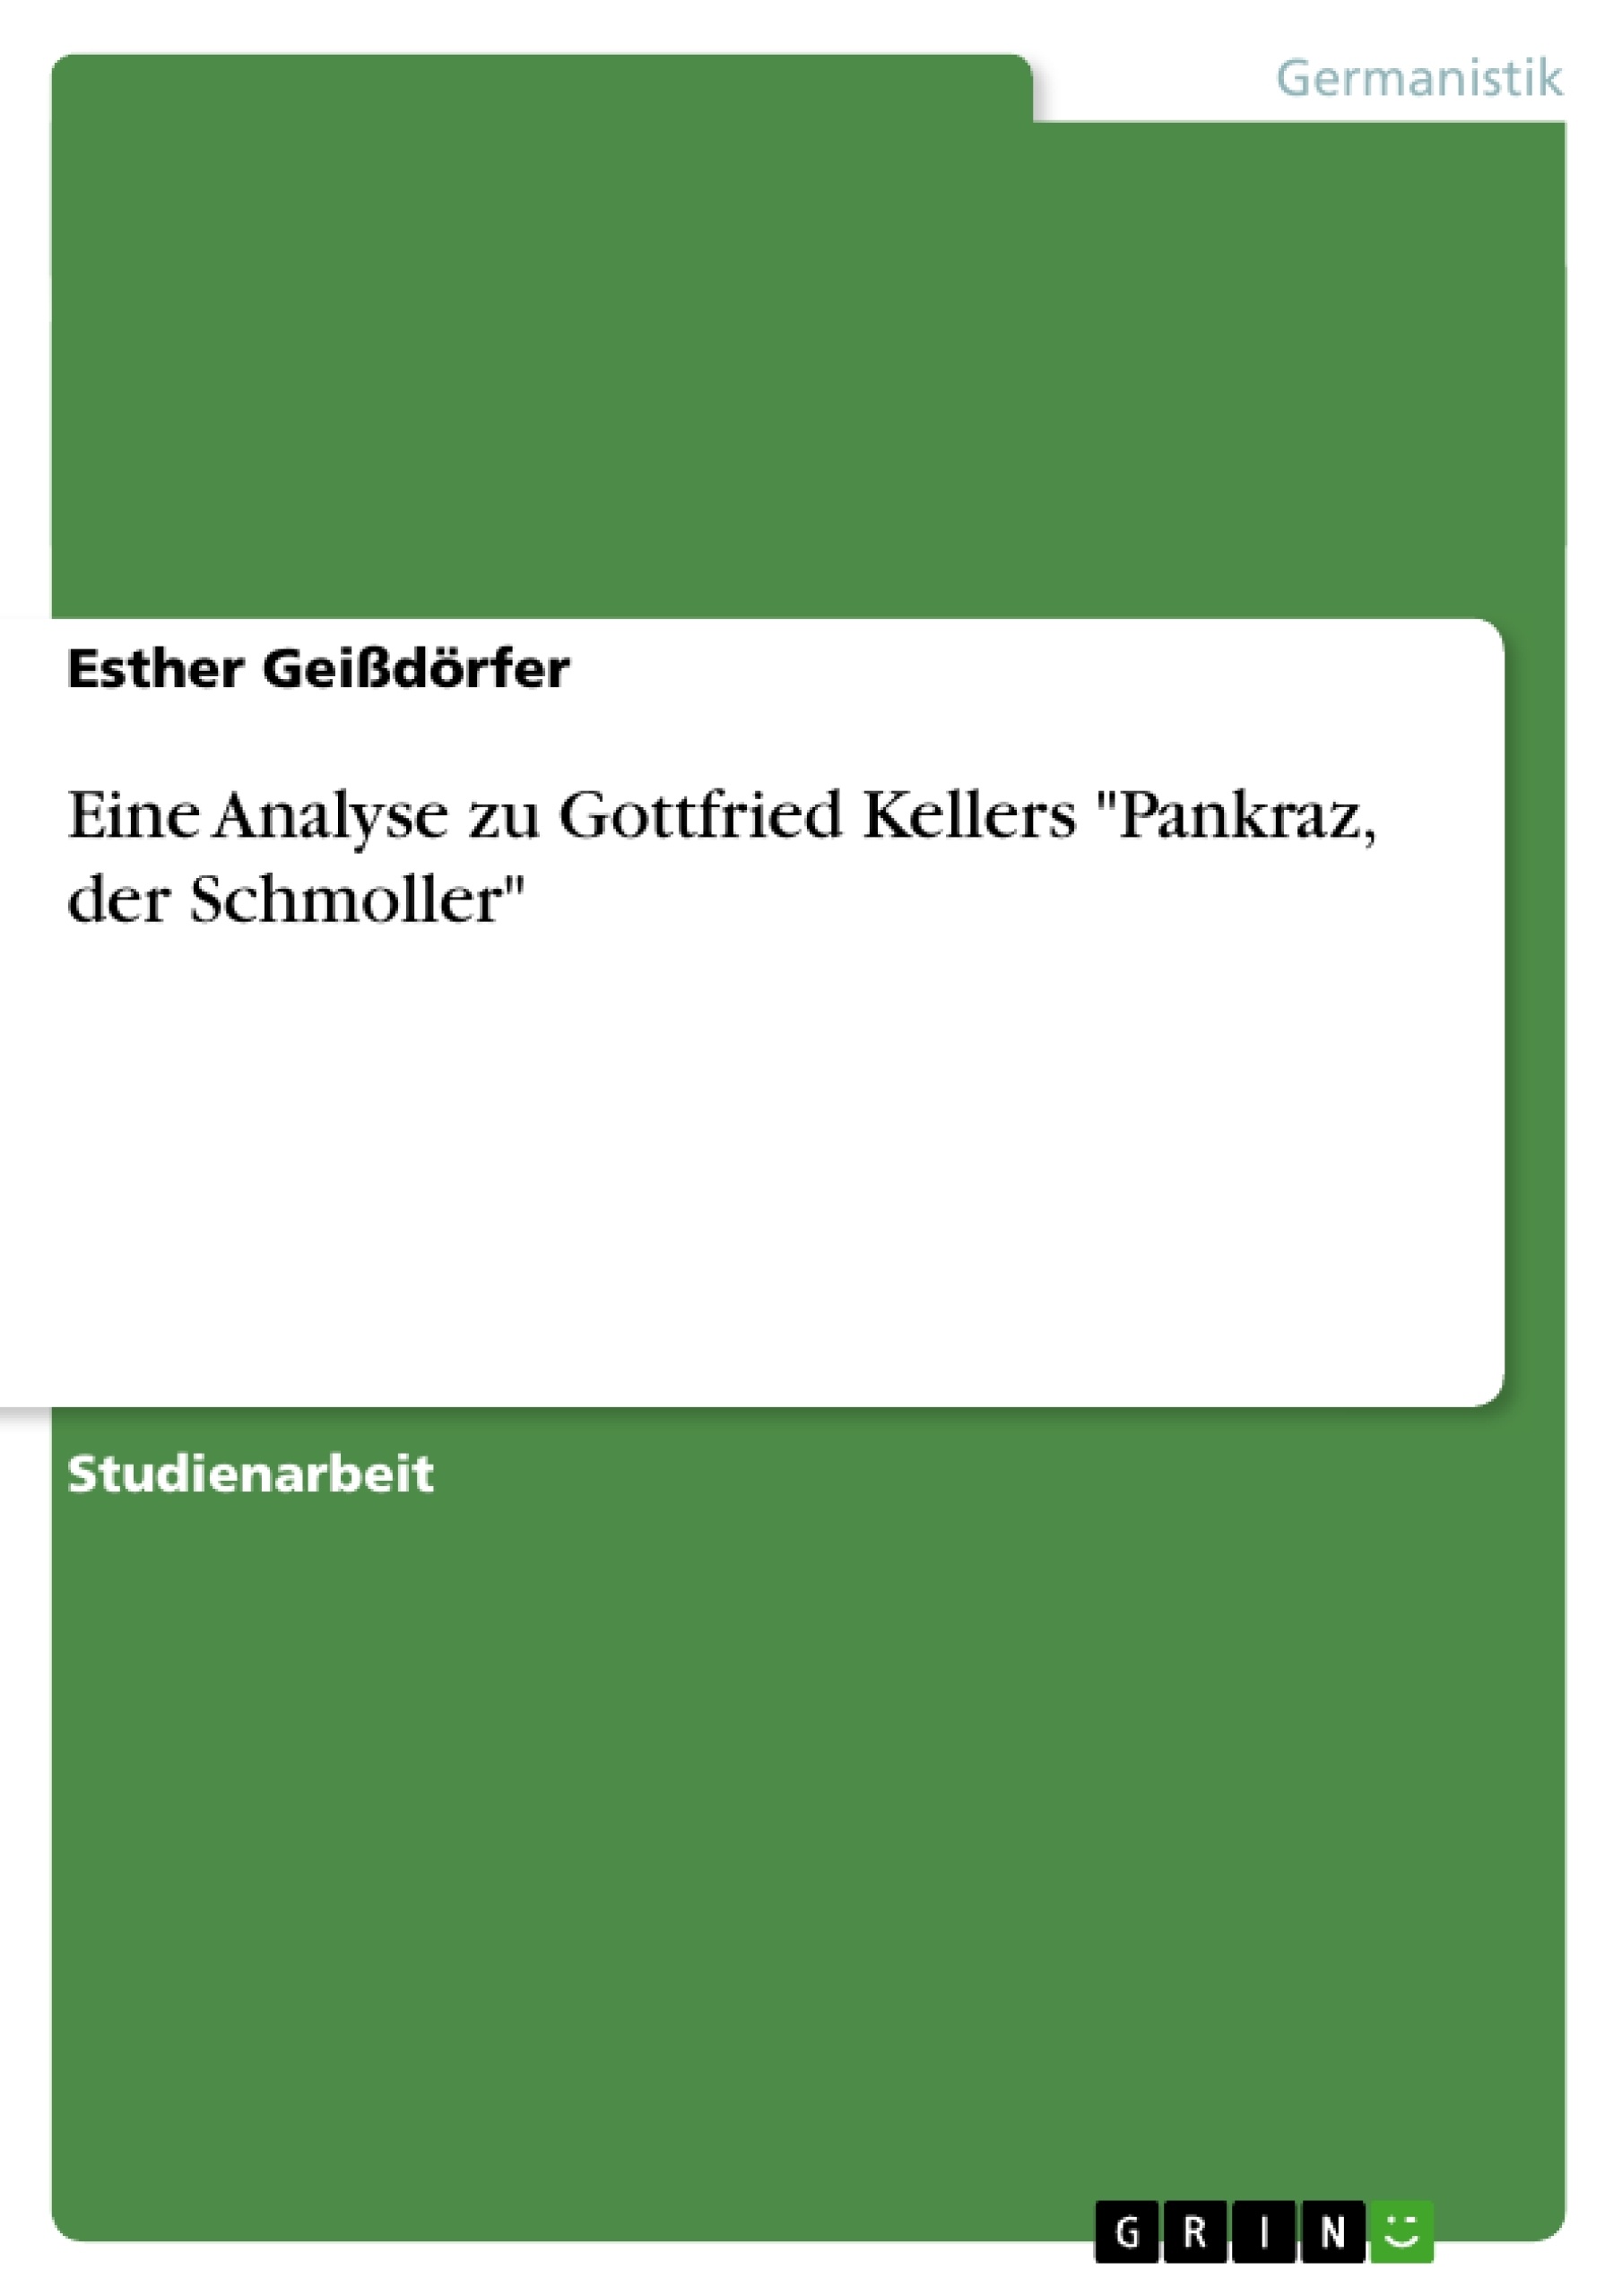 Titre: Eine Analyse zu Gottfried Kellers "Pankraz, der Schmoller"